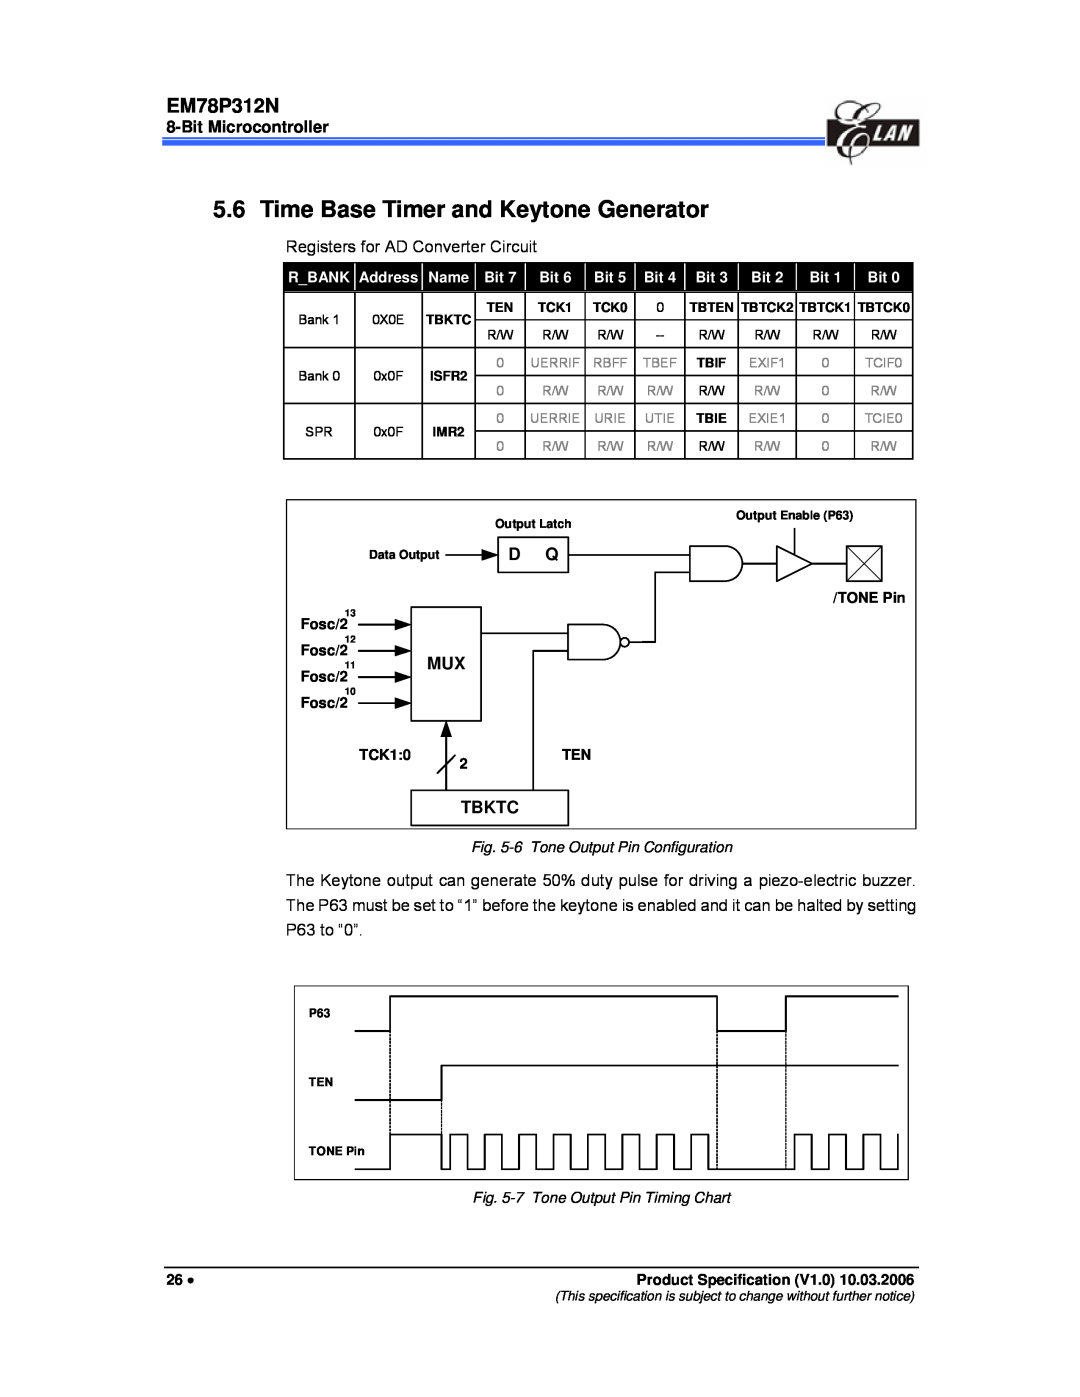 IBM EM78P312N manual Time Base Timer and Keytone Generator, Bit Microcontroller, Tbktc, Fosc/2, TONE Pin, TCK10 